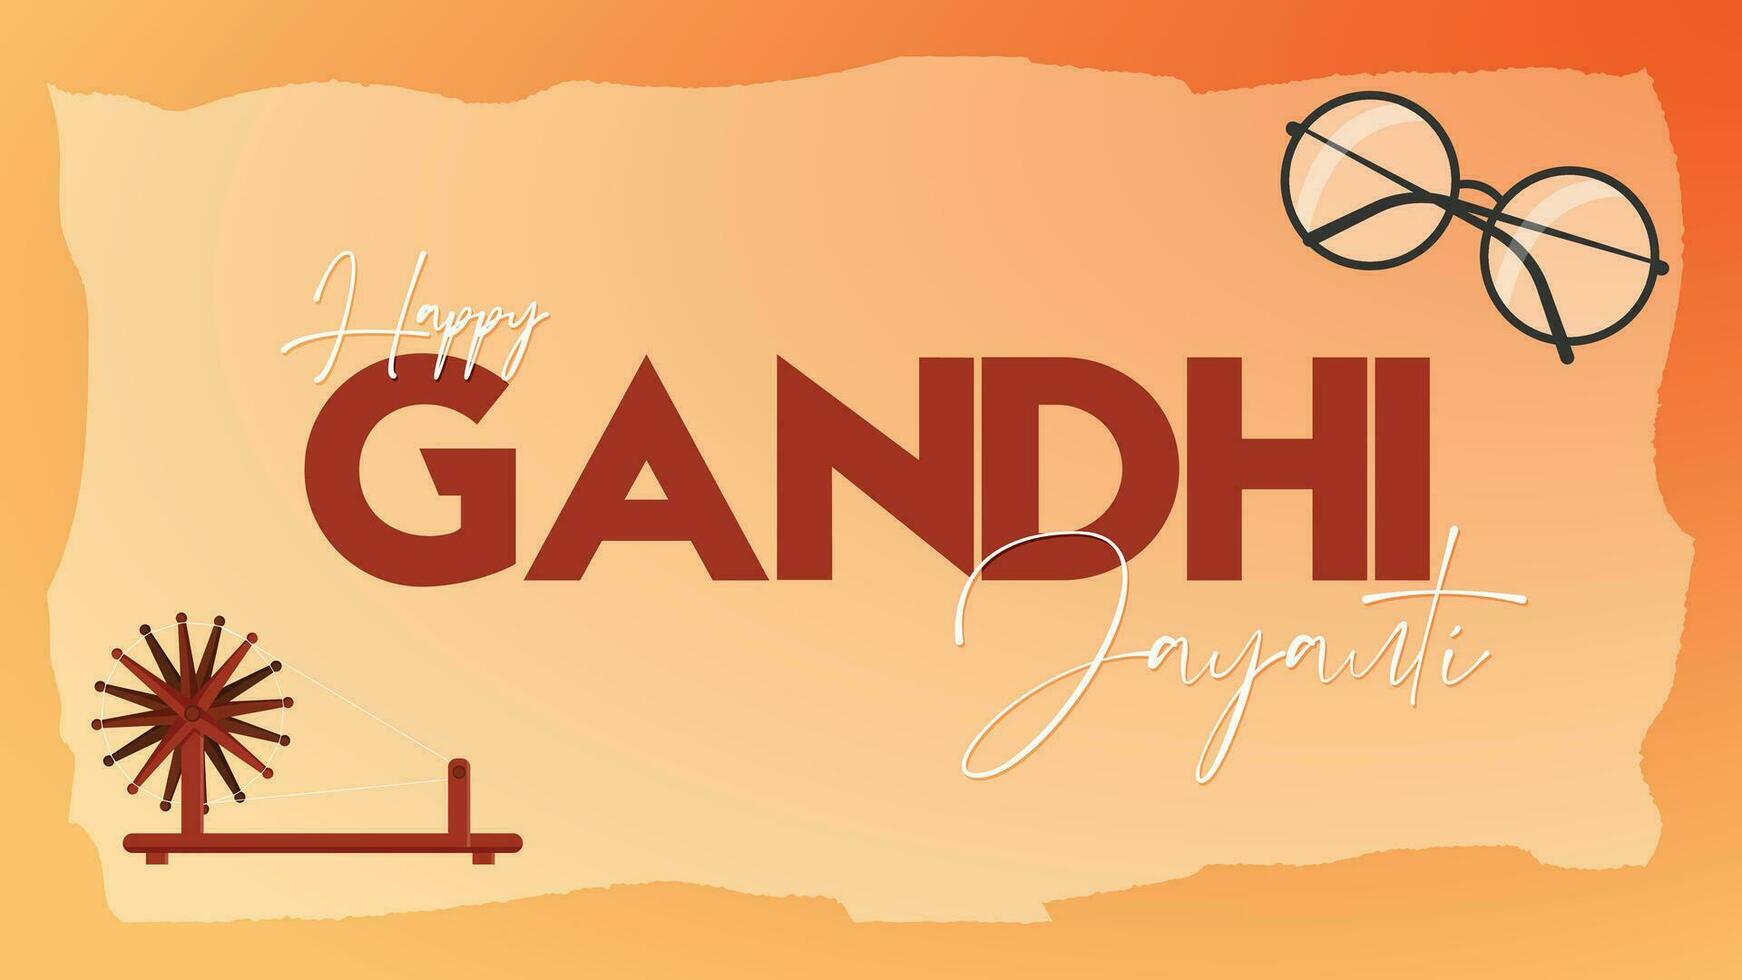 mahatma Gandhi Jayanti - 2e oktober met creatief ontwerp vector illustratie